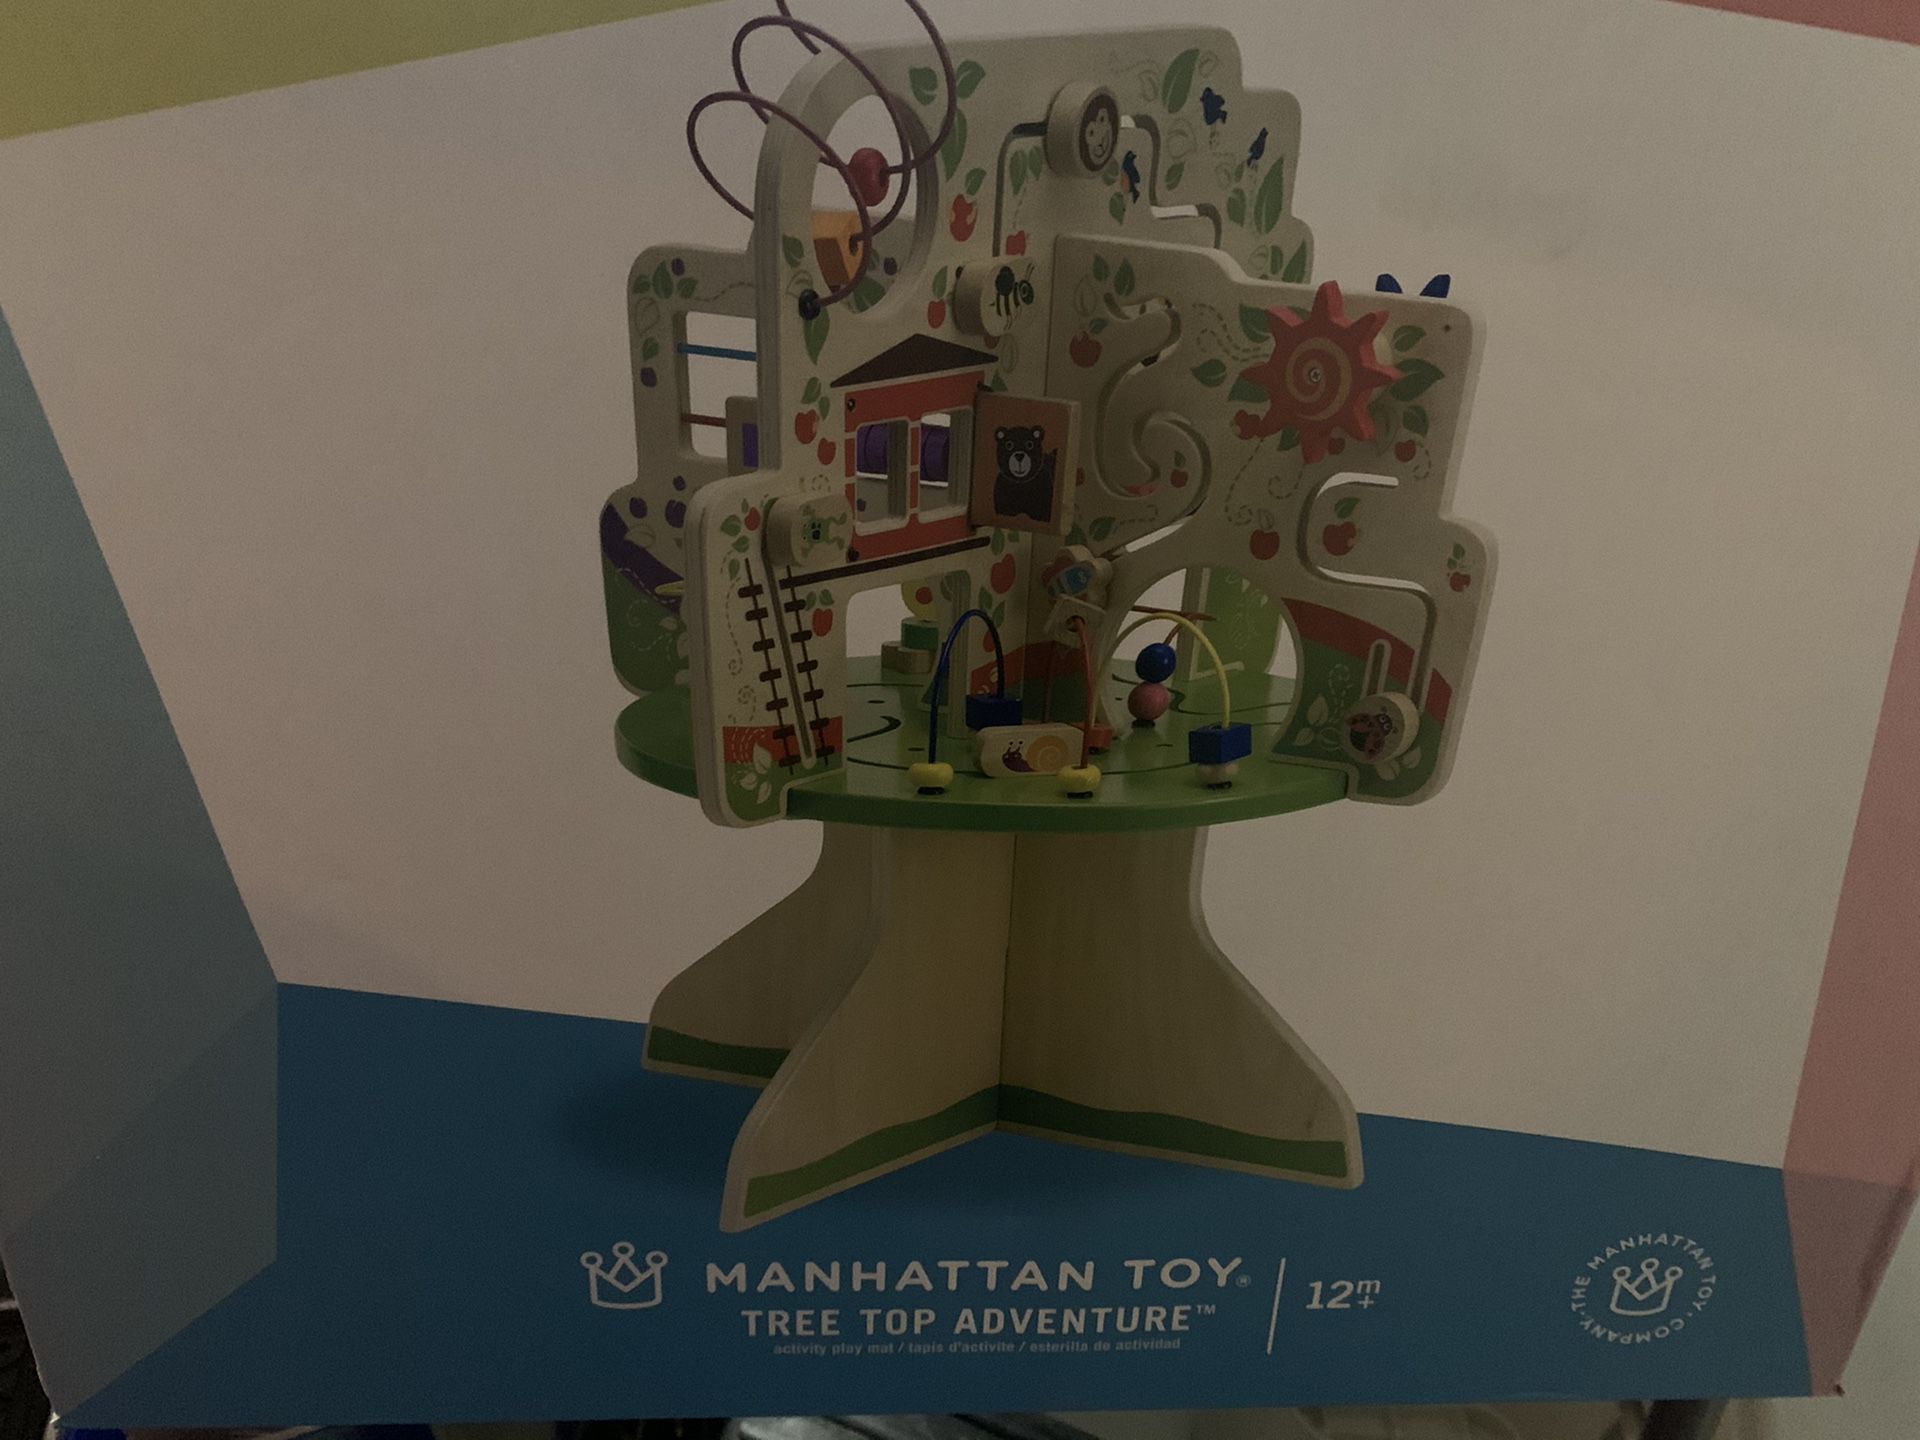 Manhattan toy tree